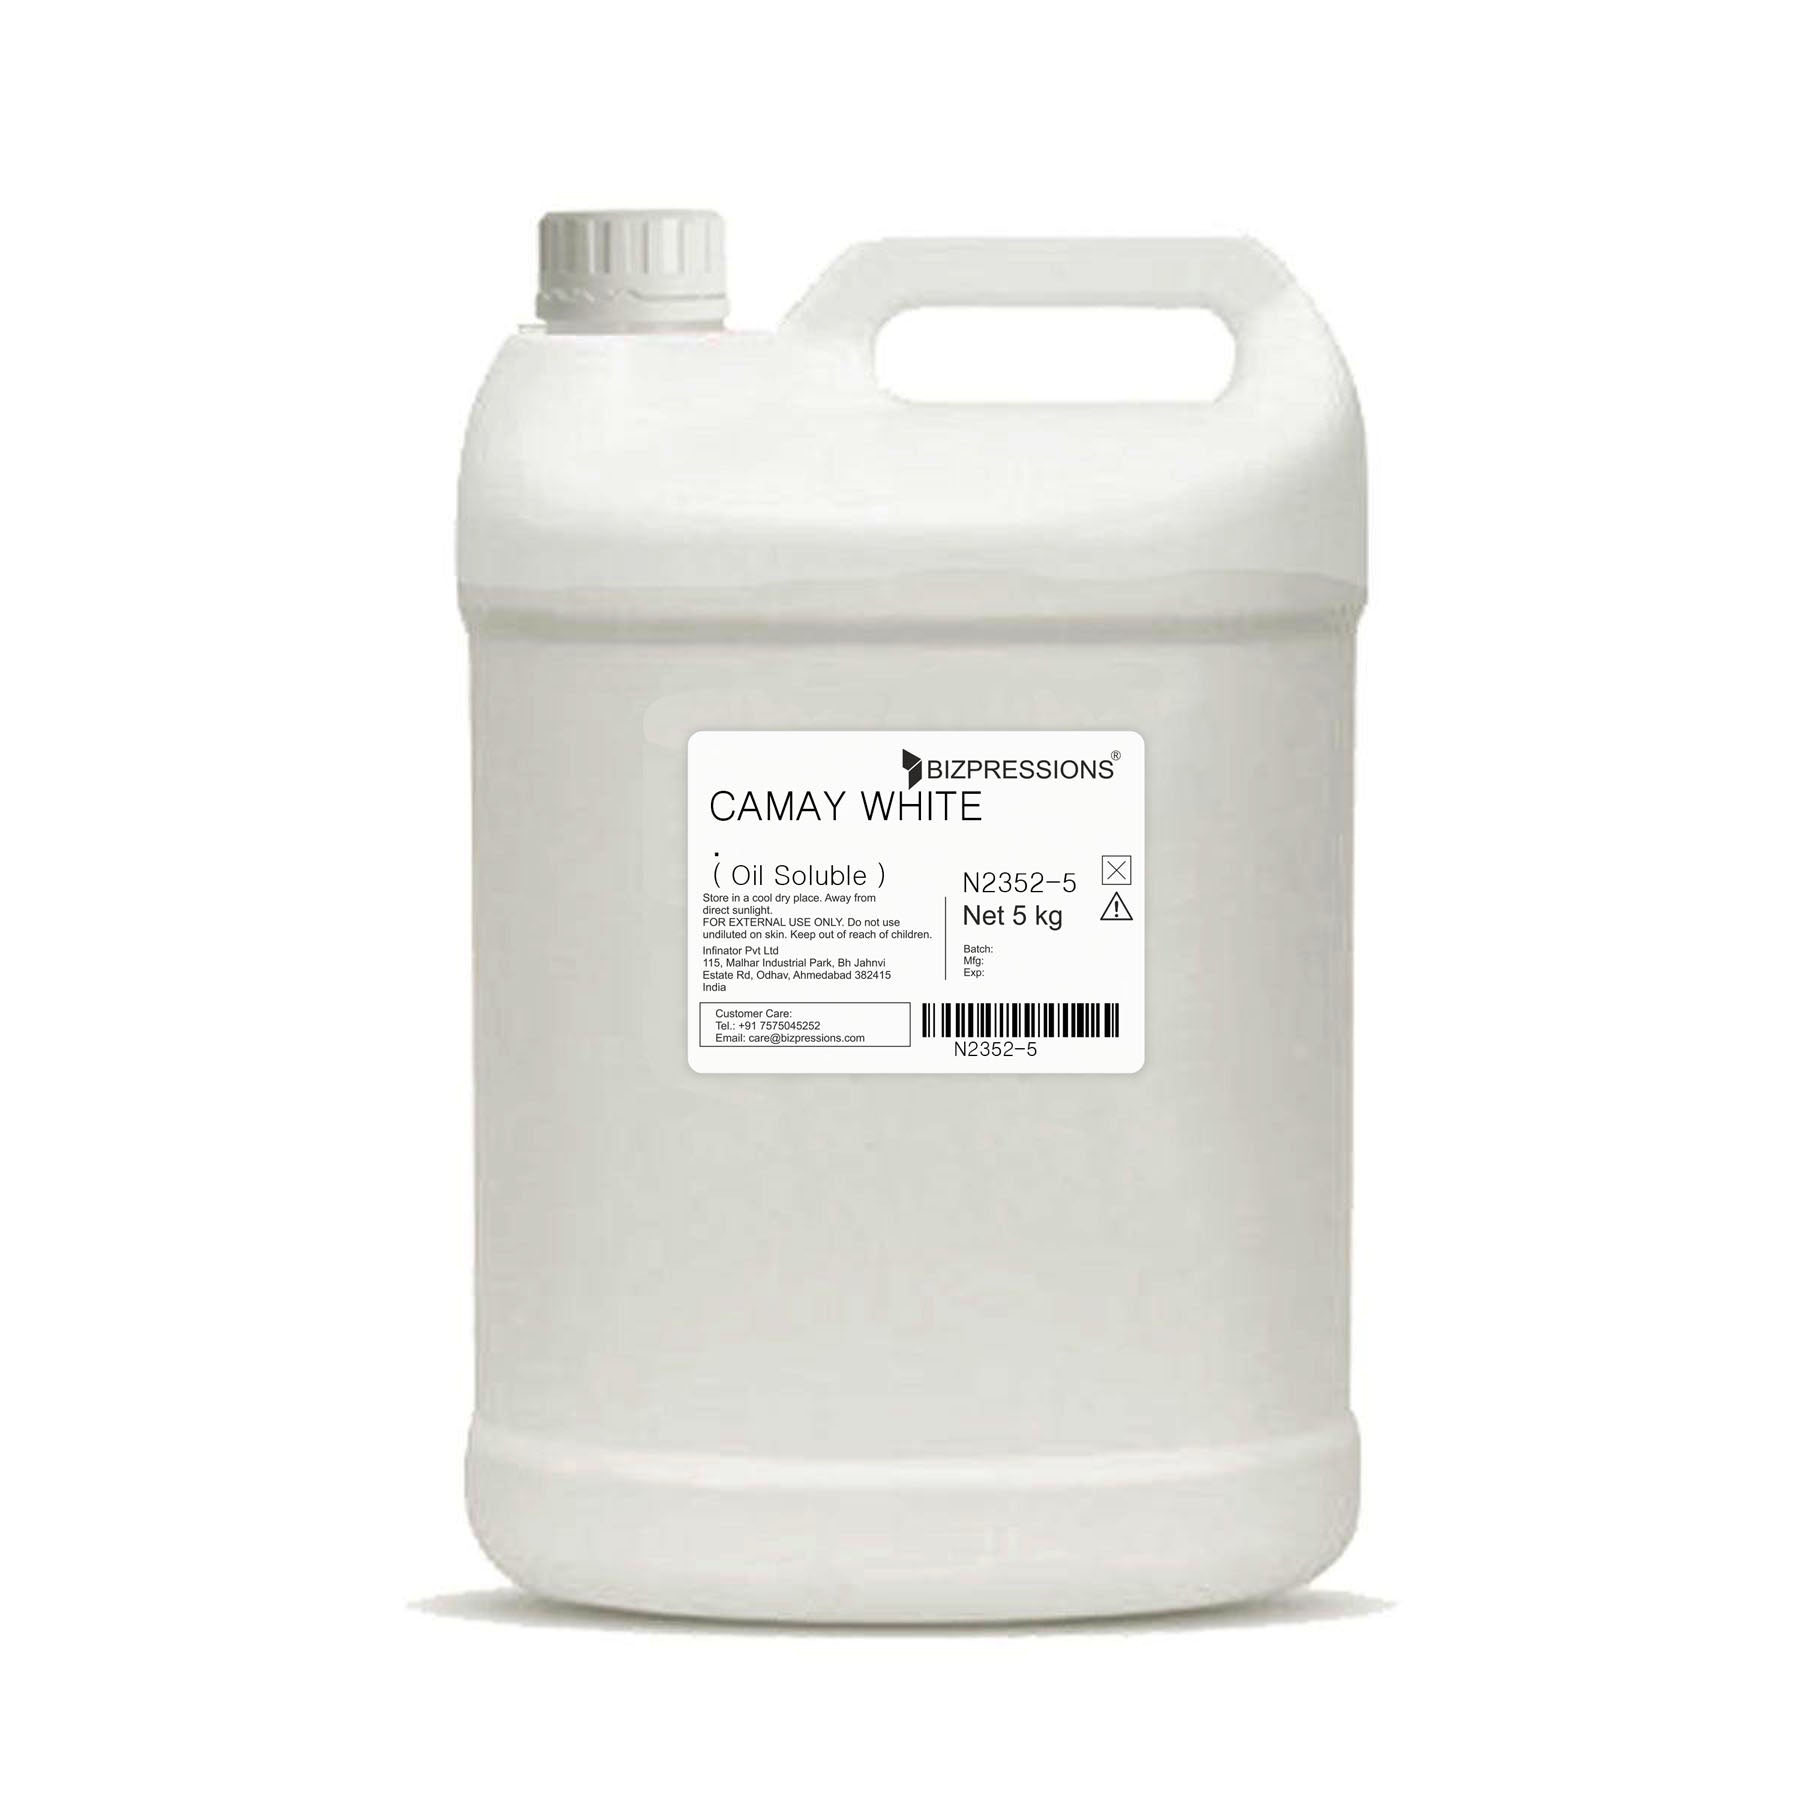 CAMAY WHITE - Fragrance ( Oil Soluble ) - 5 kg